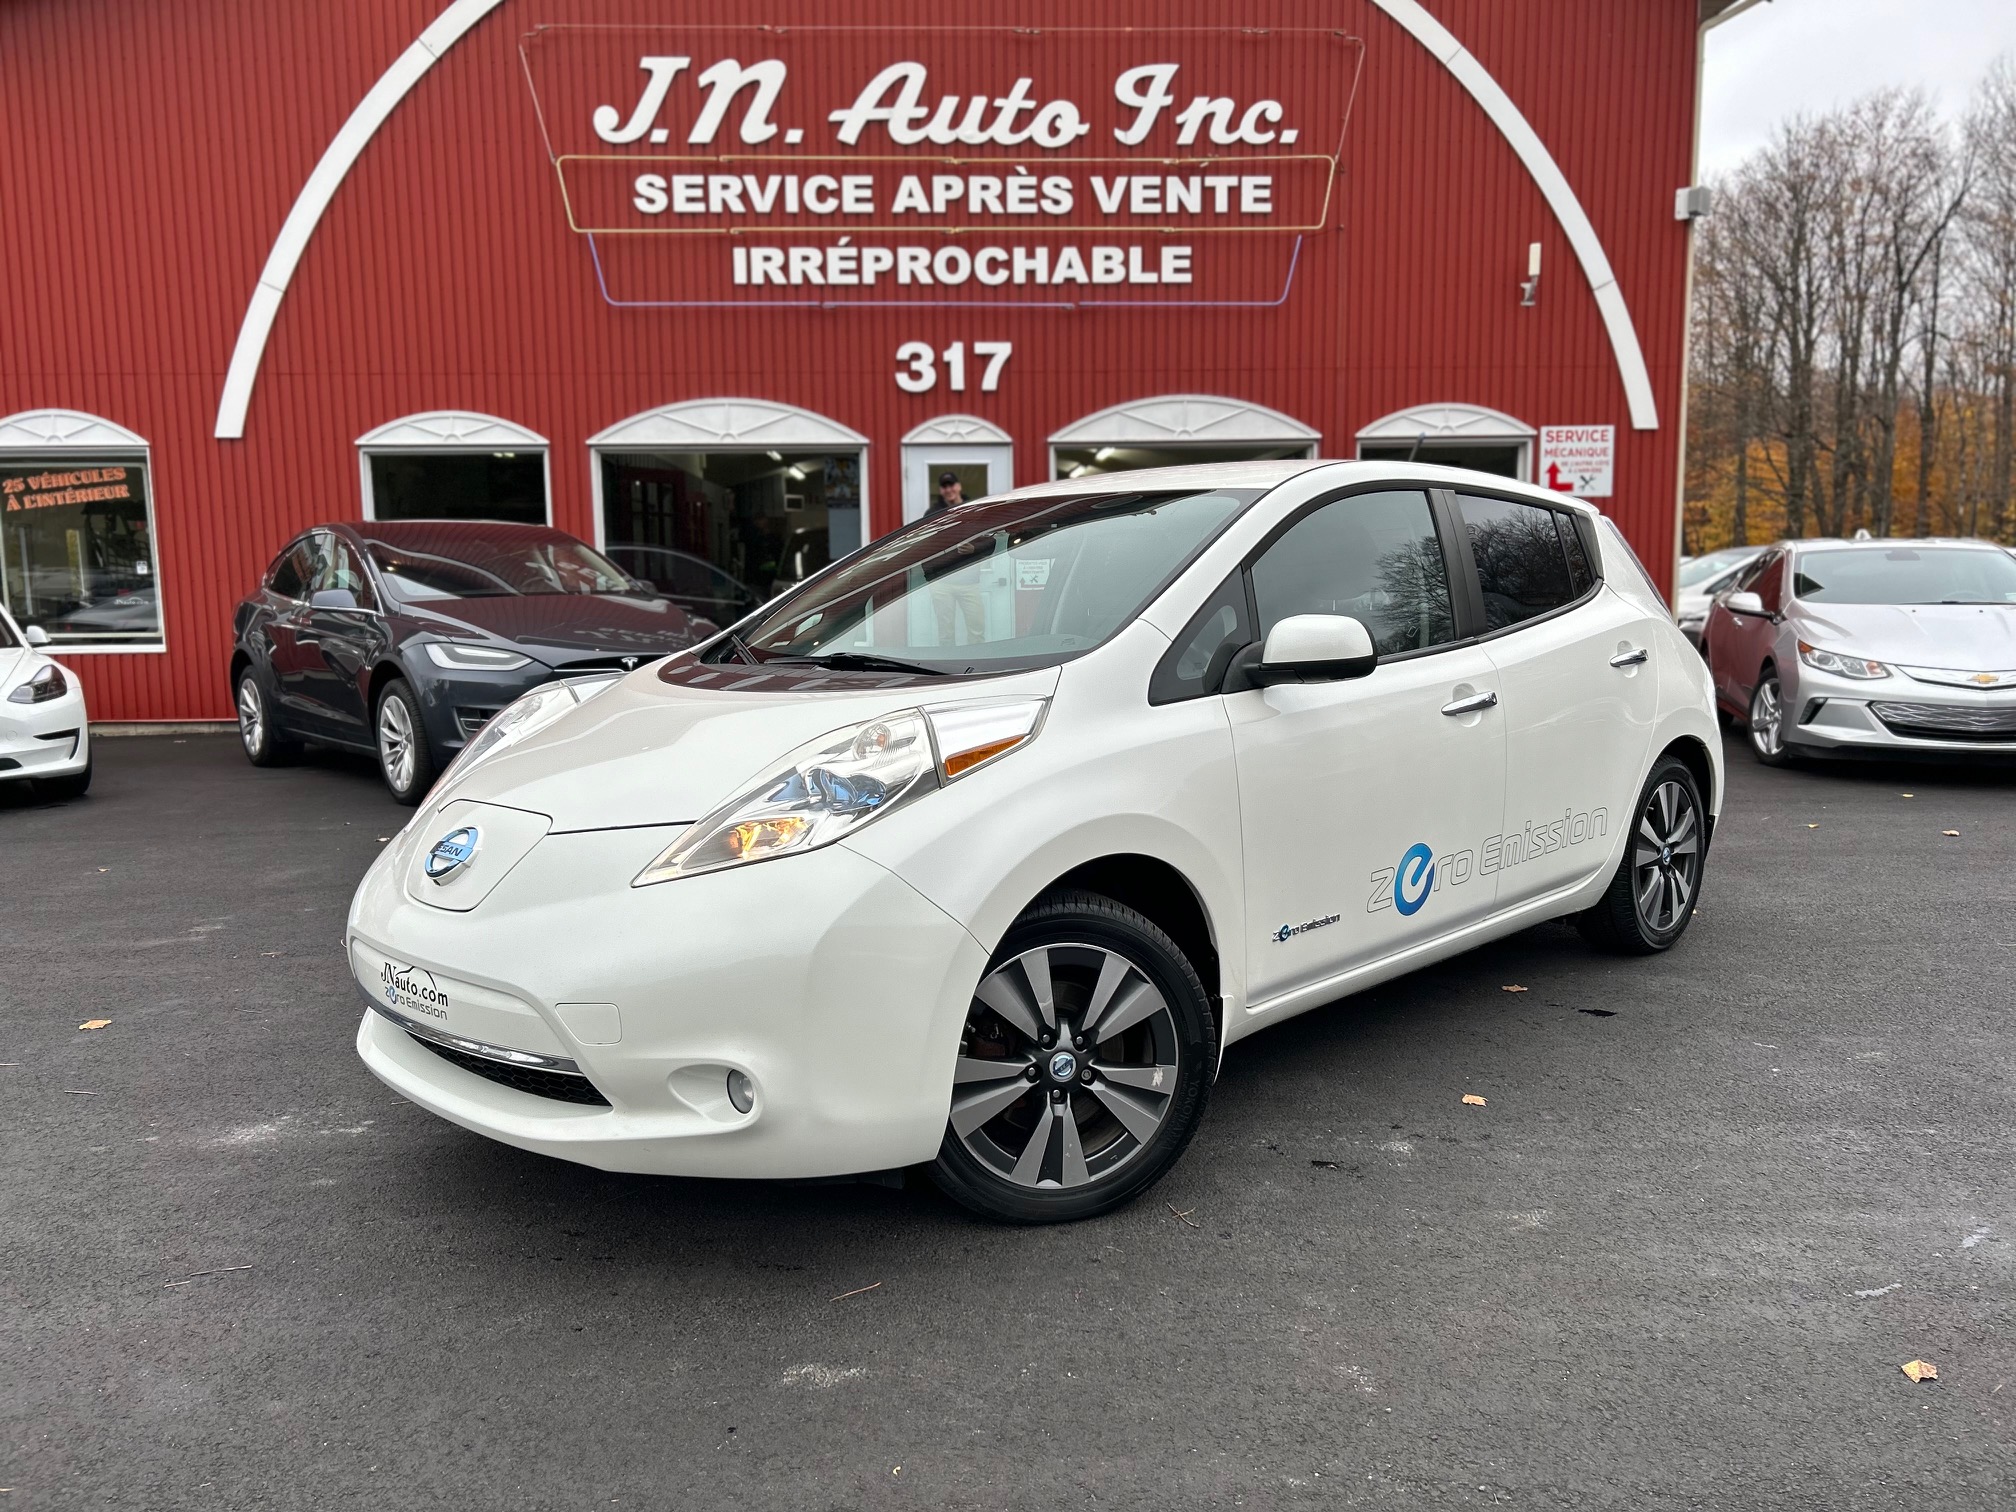 Véhicule Nissan Leaf $30941 2020 à vendre près de Sherbrooke, JN Auto